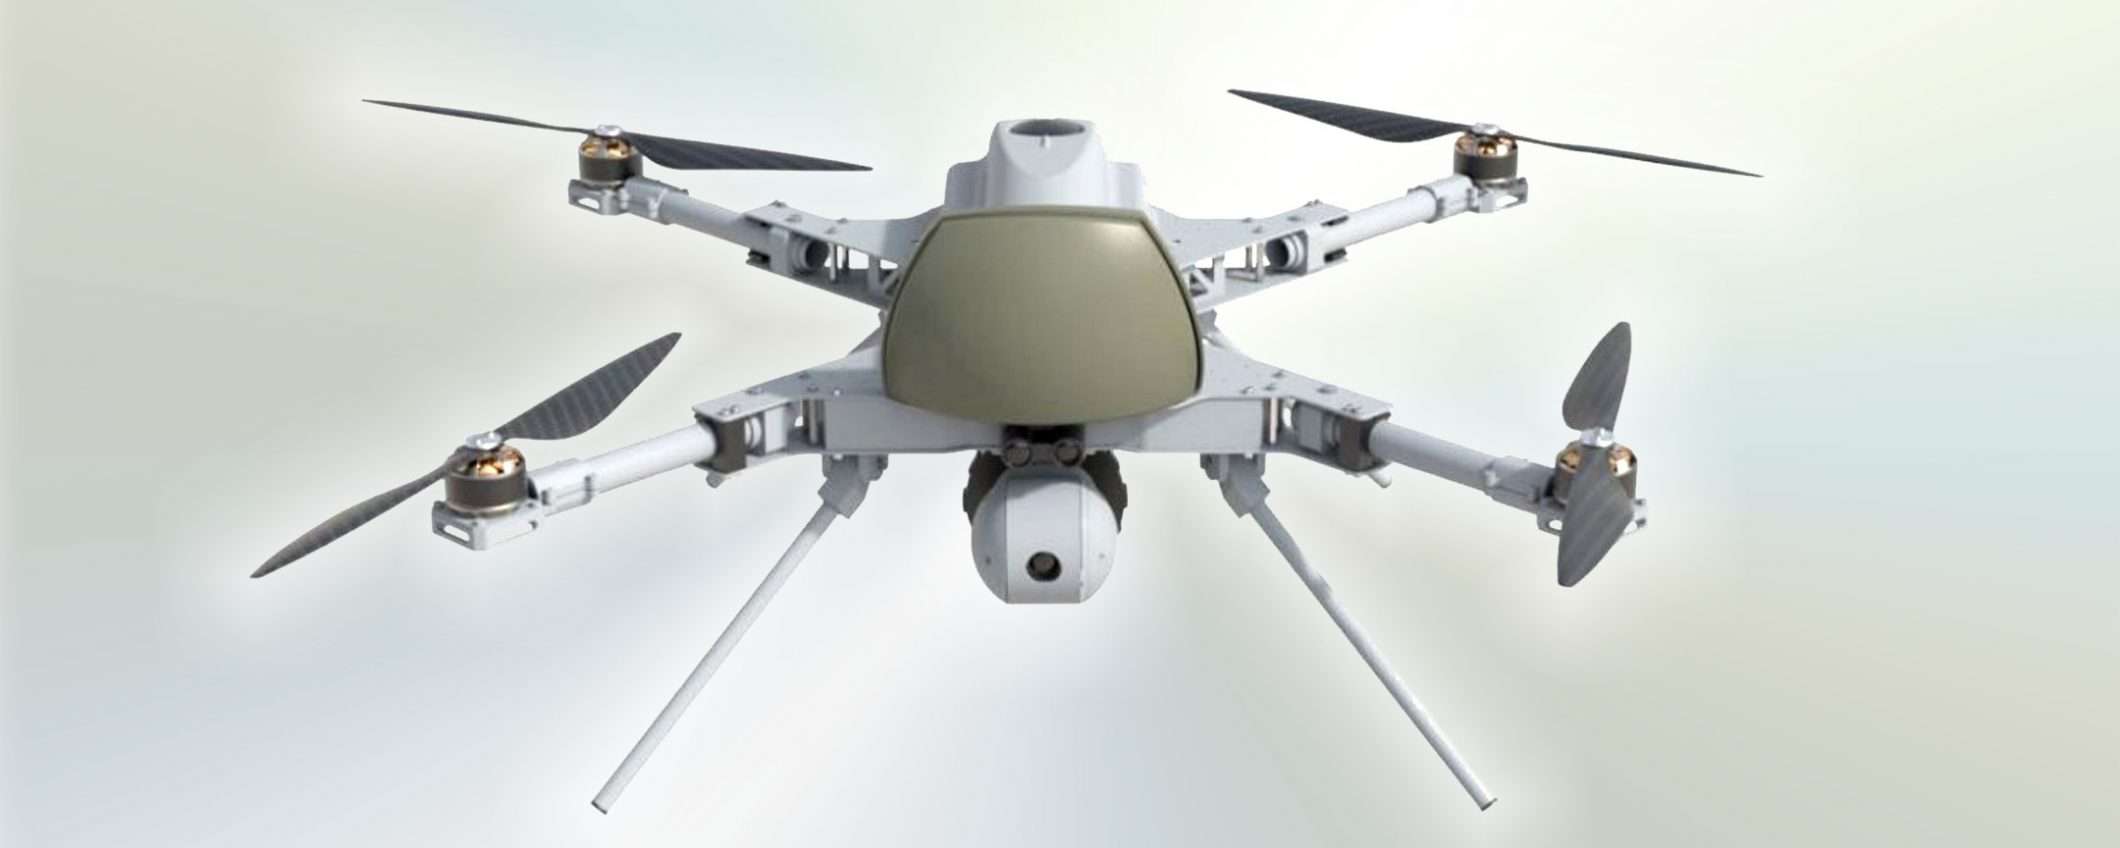 La guerra dei droni: il pericolo arriva dall'alto